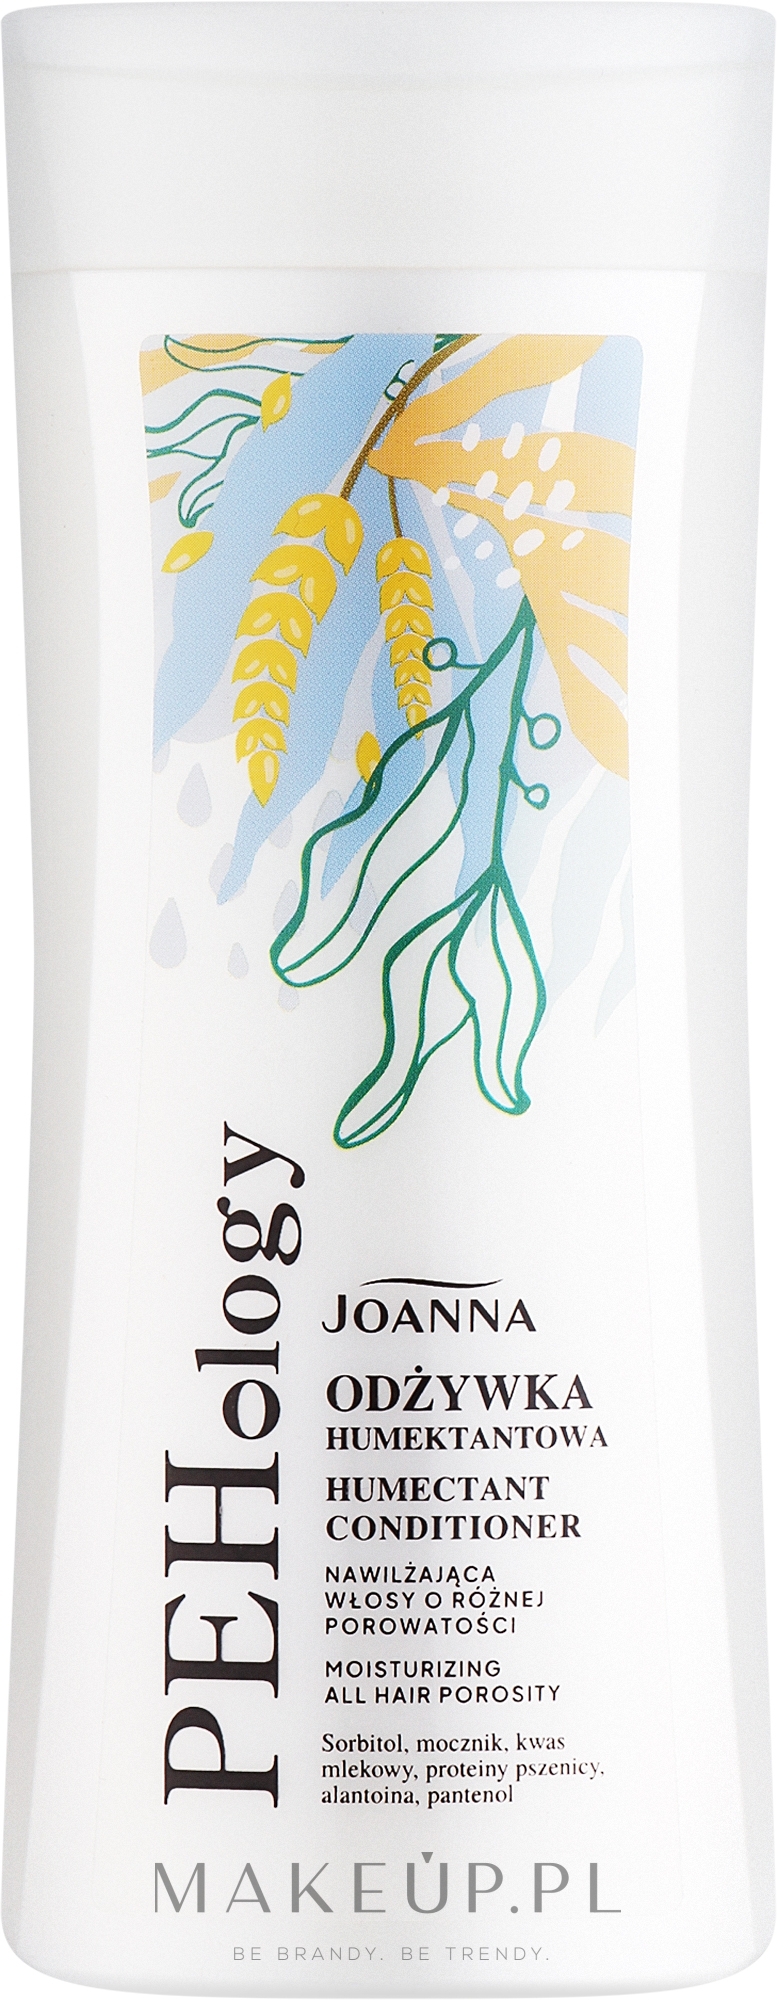 Nawilżająca odżywka do włosów o różnej porowatości - Joanna PEHology Moisturizing All Hair Porosity Humectant Conditioner — Zdjęcie 200 g